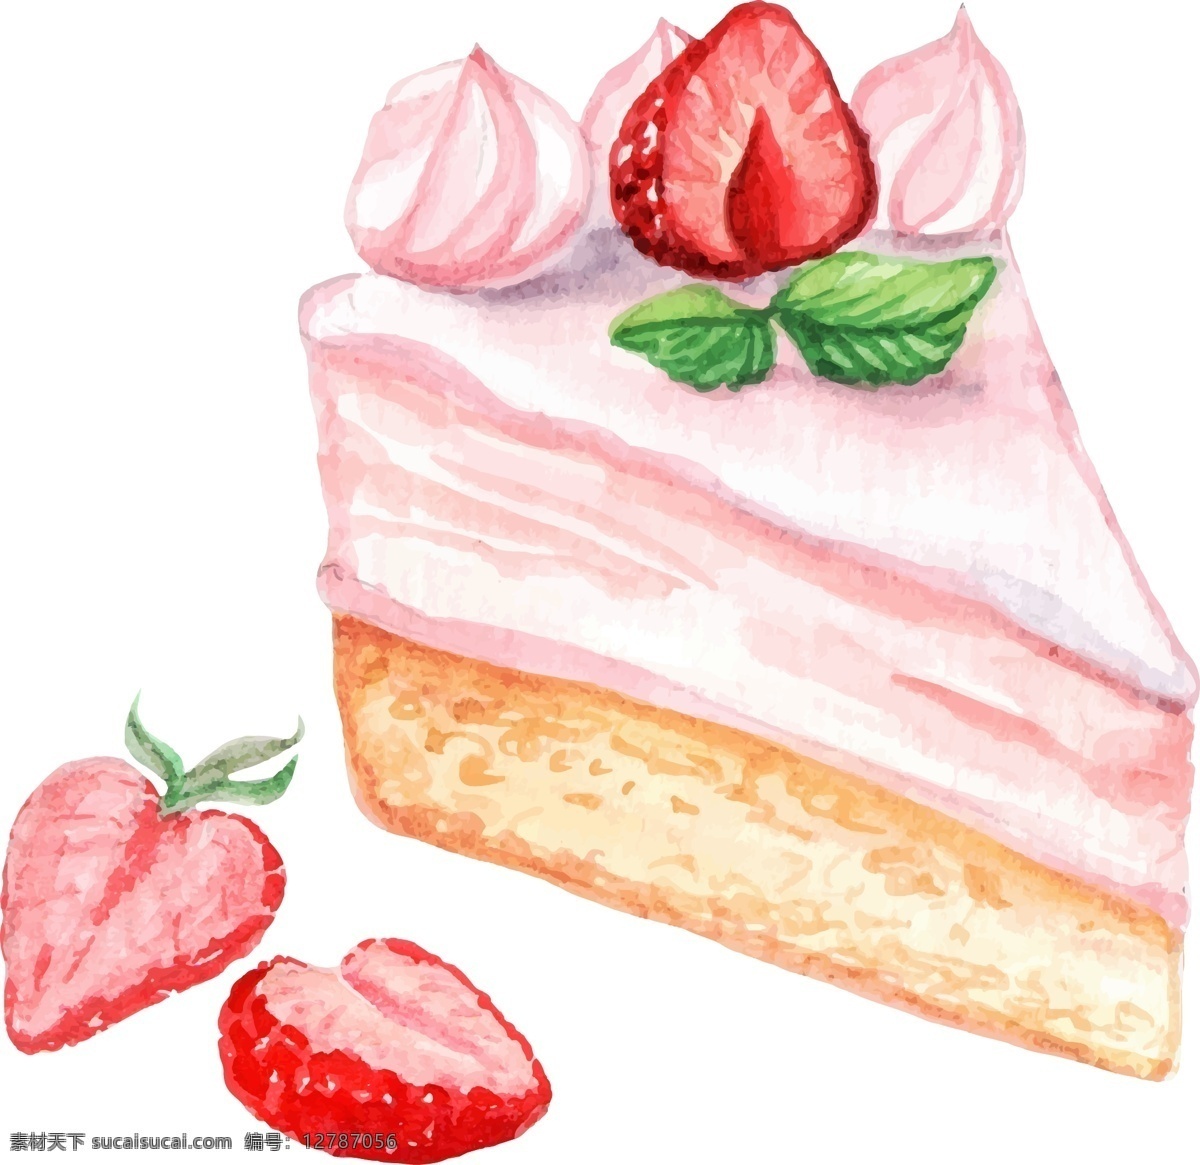 水彩 绘 美味 三角 水果 蛋糕 插画 水彩绘 水果蛋糕 手绘